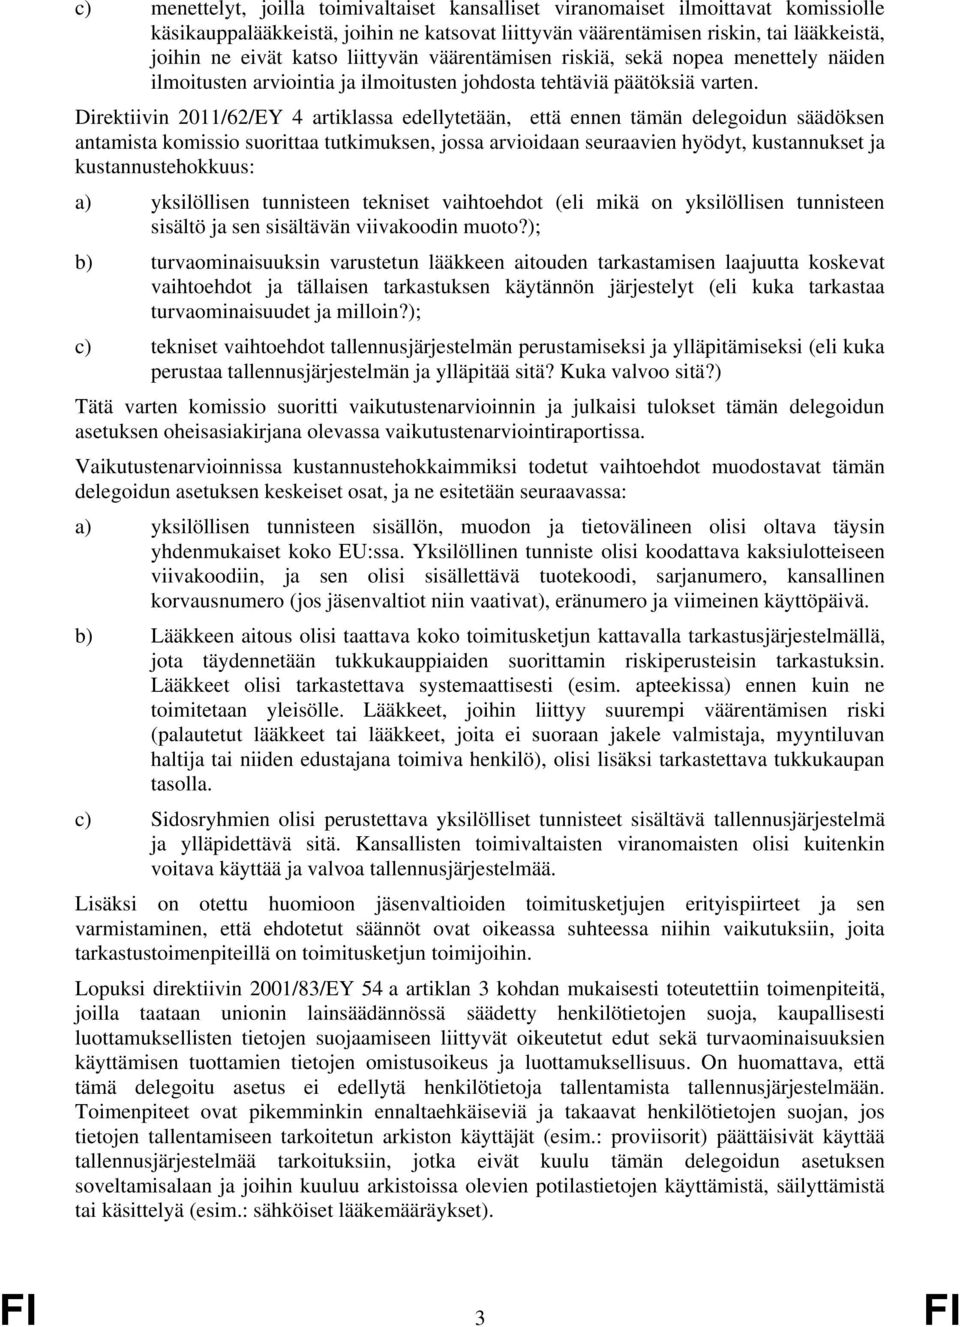 Direktiivin 2011/62/EY 4 artiklassa edellytetään, että ennen tämän delegoidun säädöksen antamista komissio suorittaa tutkimuksen, jossa arvioidaan seuraavien hyödyt, kustannukset ja